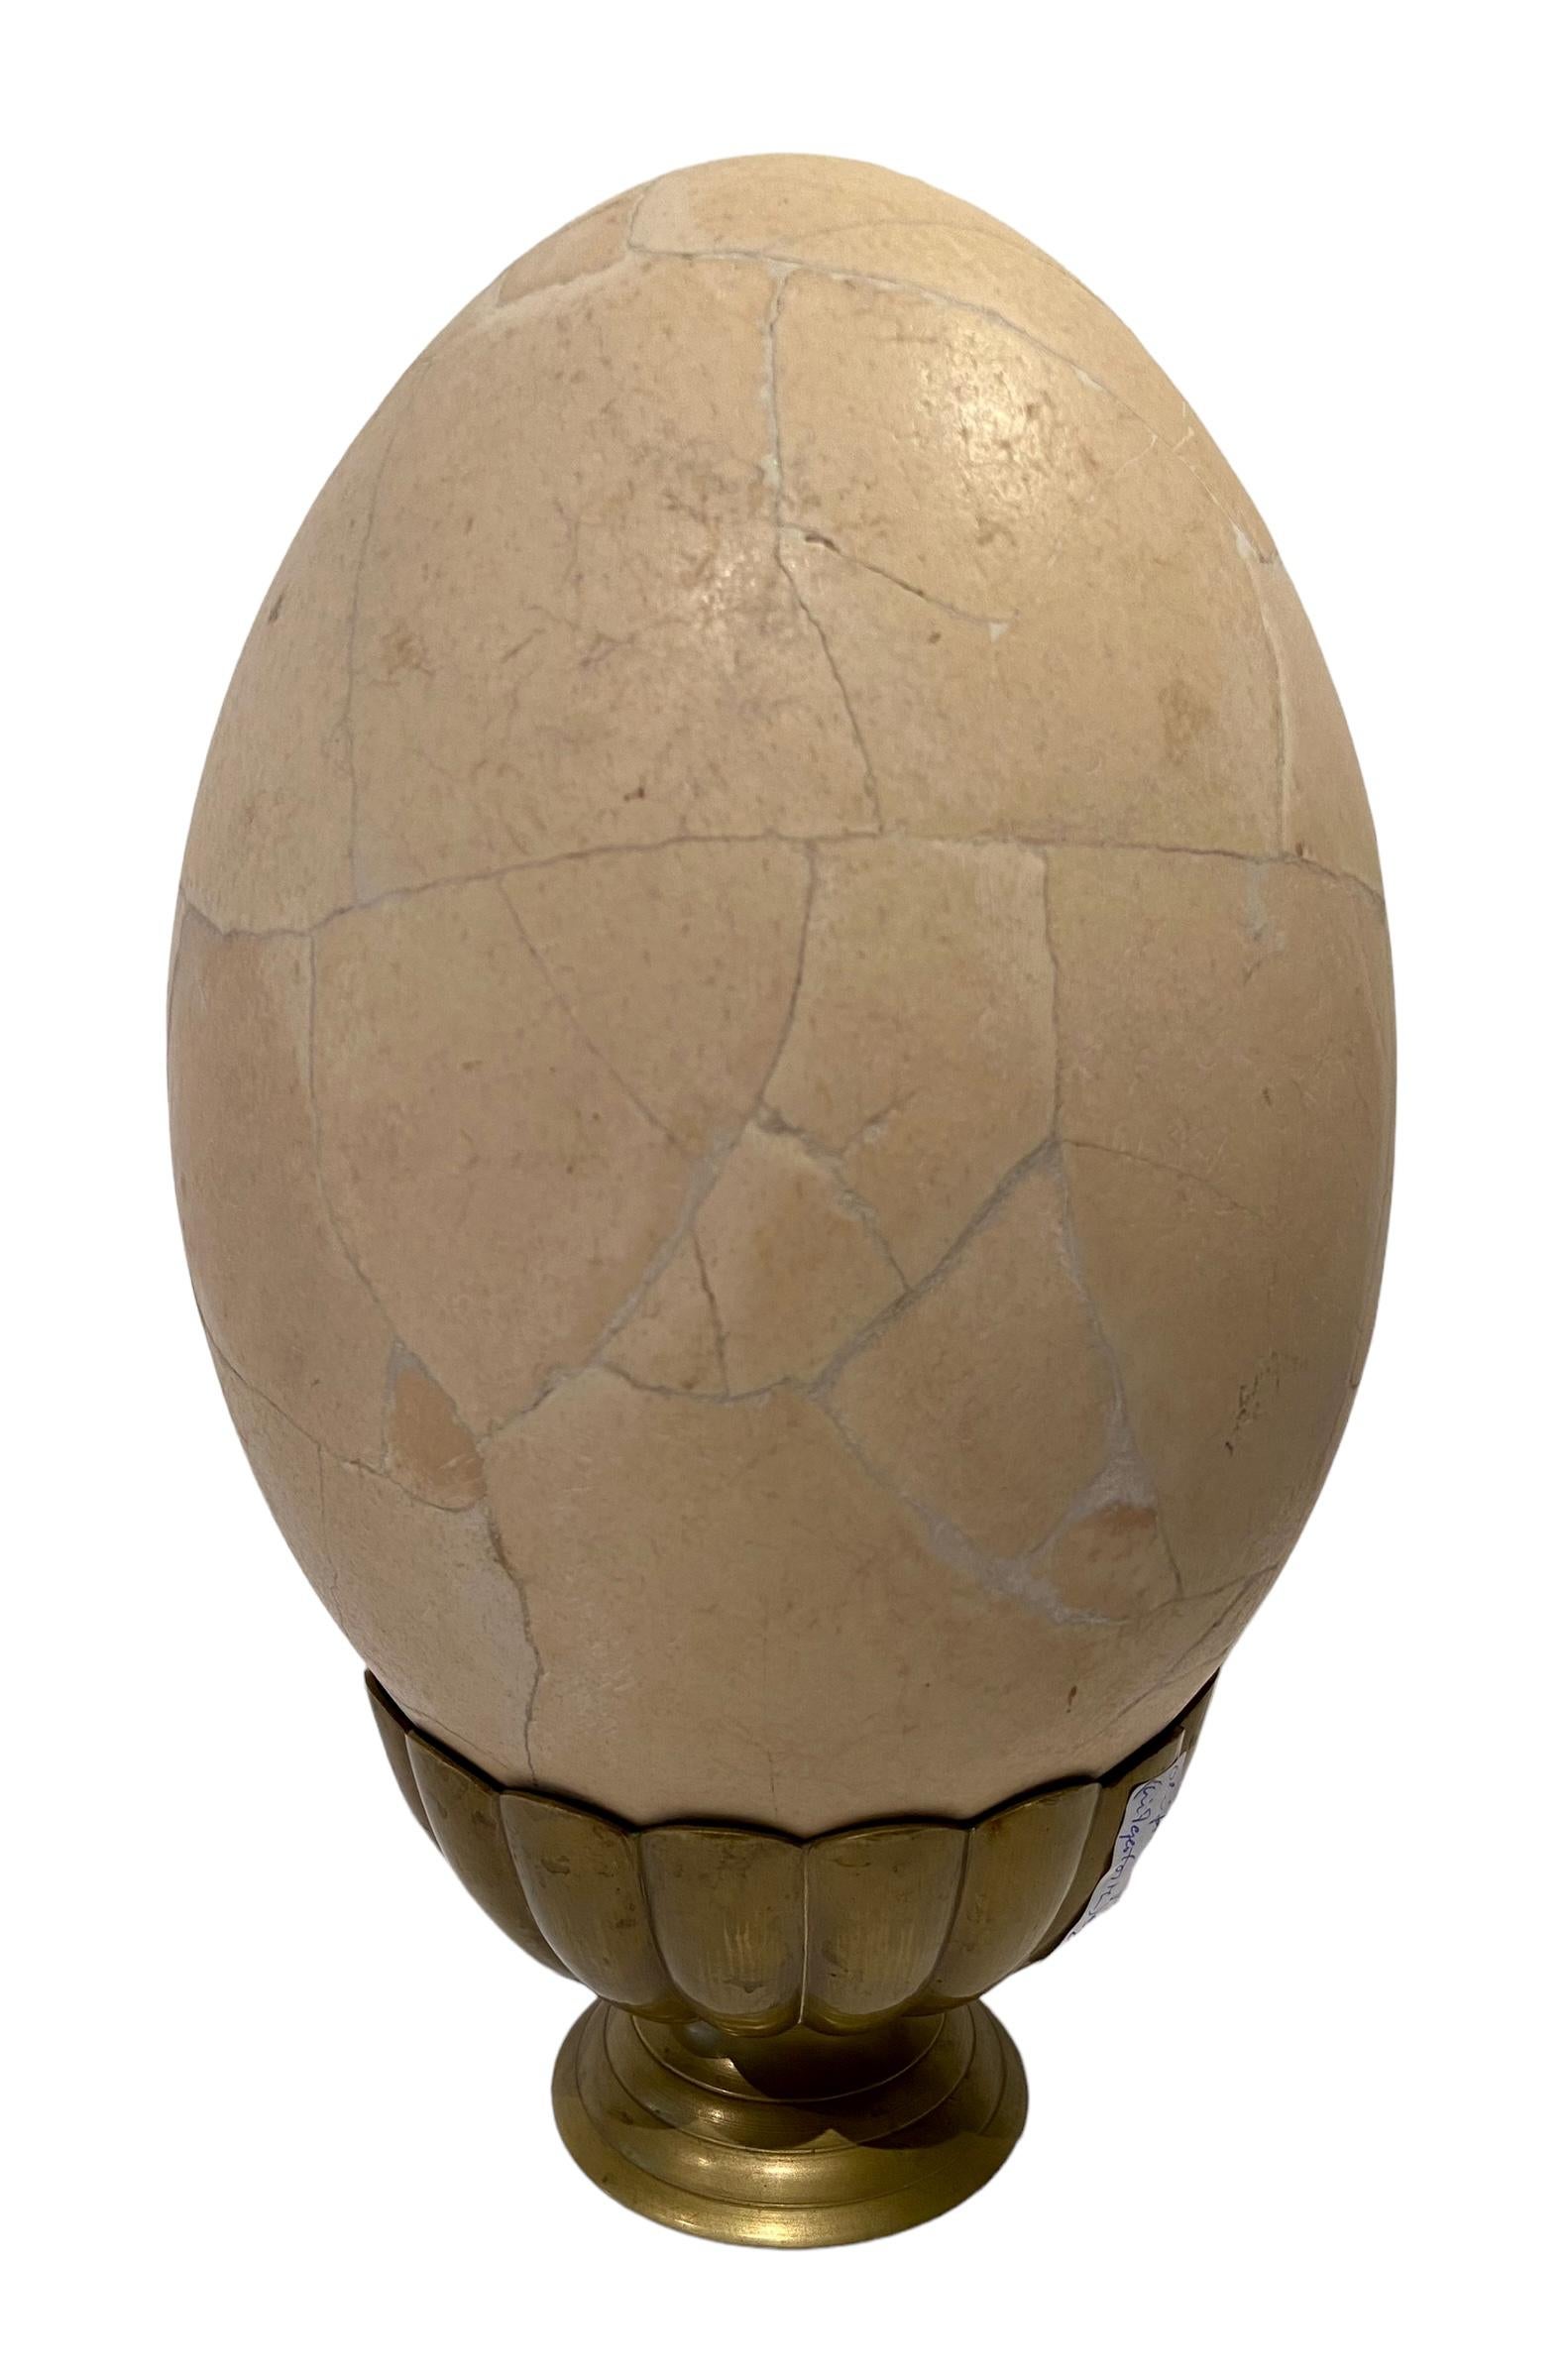 Œuf d'oiseau éléphant de Madagascar.
Le plus gros œuf jamais produit par une créature vivante, celui de l'oiseau-éléphant, aujourd'hui disparu. Assemblé à partir des éclats de plusieurs œufs. 
Âge : de 1 000 à 1 500 ans. Longueur : 31 cm. Diamètre :